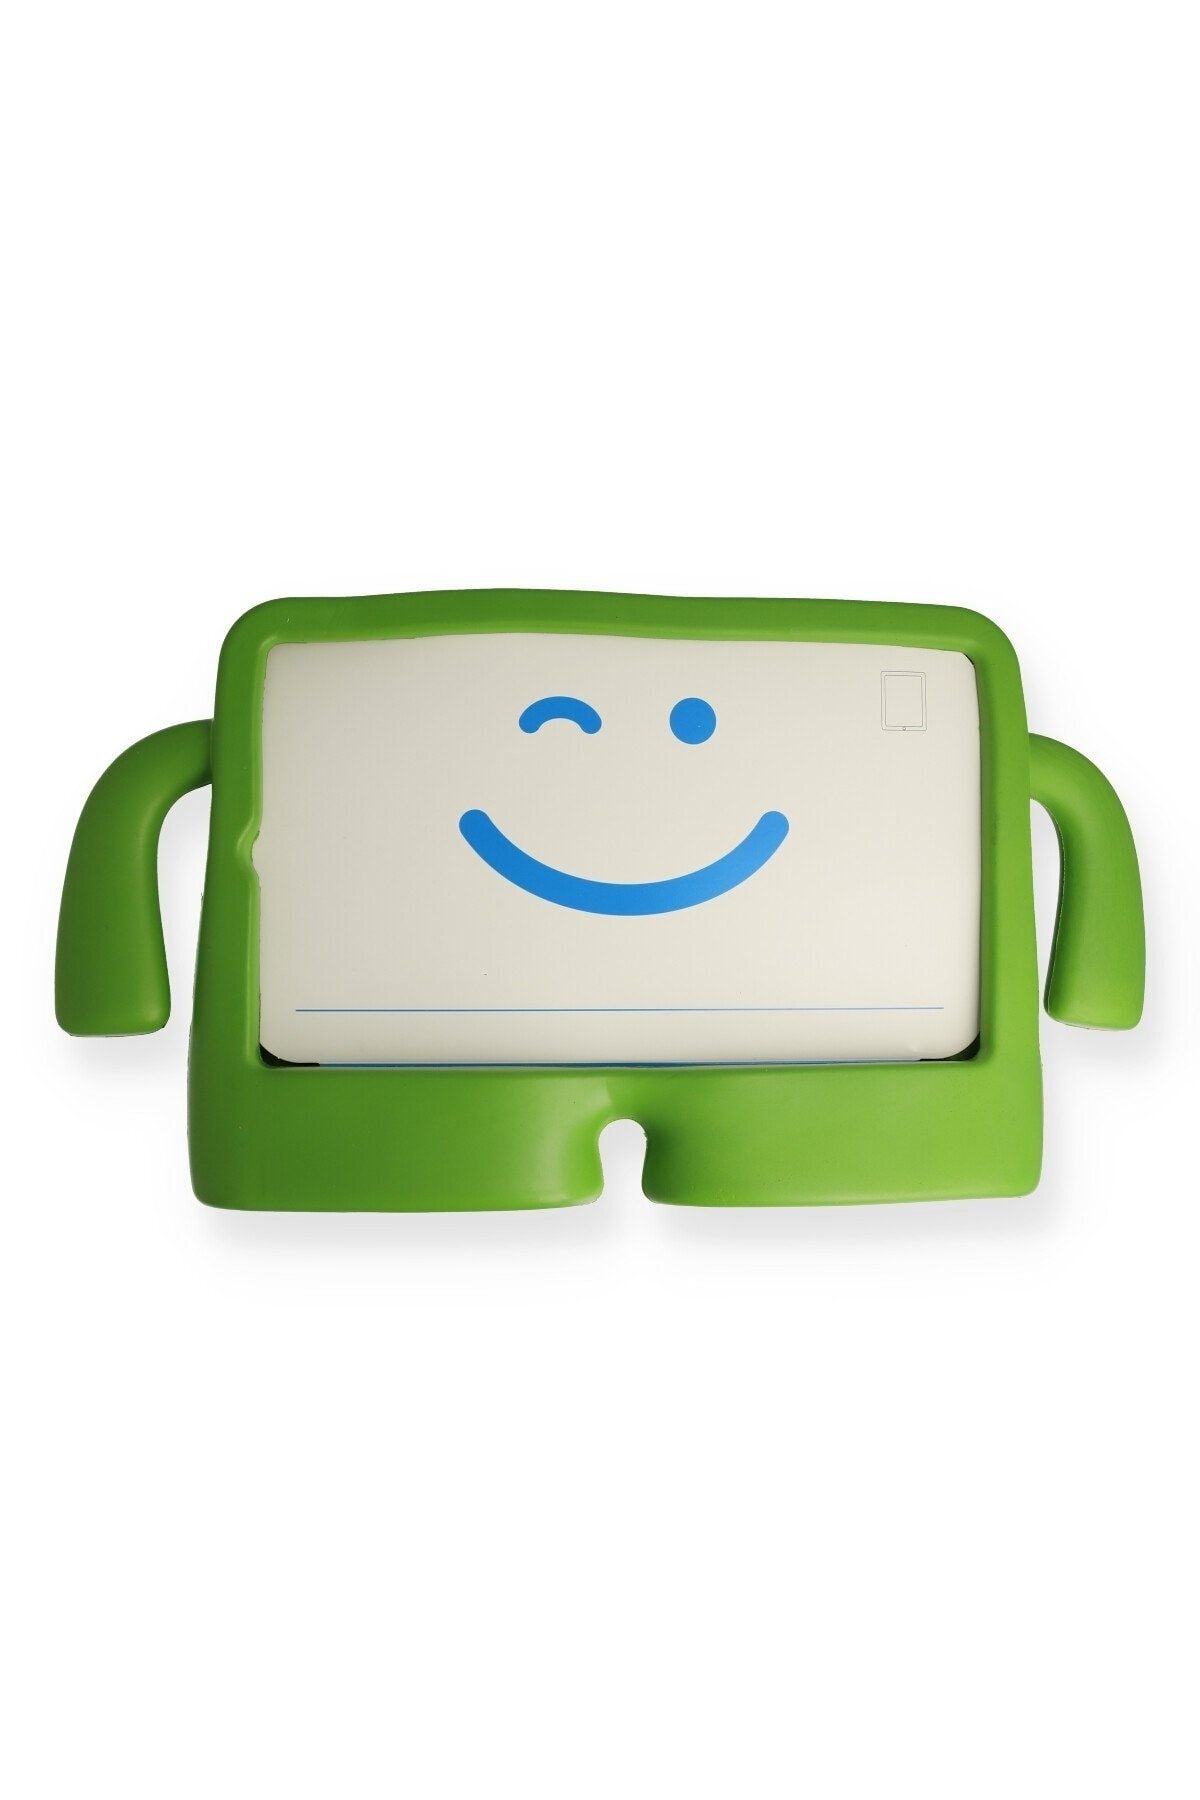 Bilişim Aksesuar Ipad Mini 4 Kılıf Karakter Tablet Silikon - Yeşil